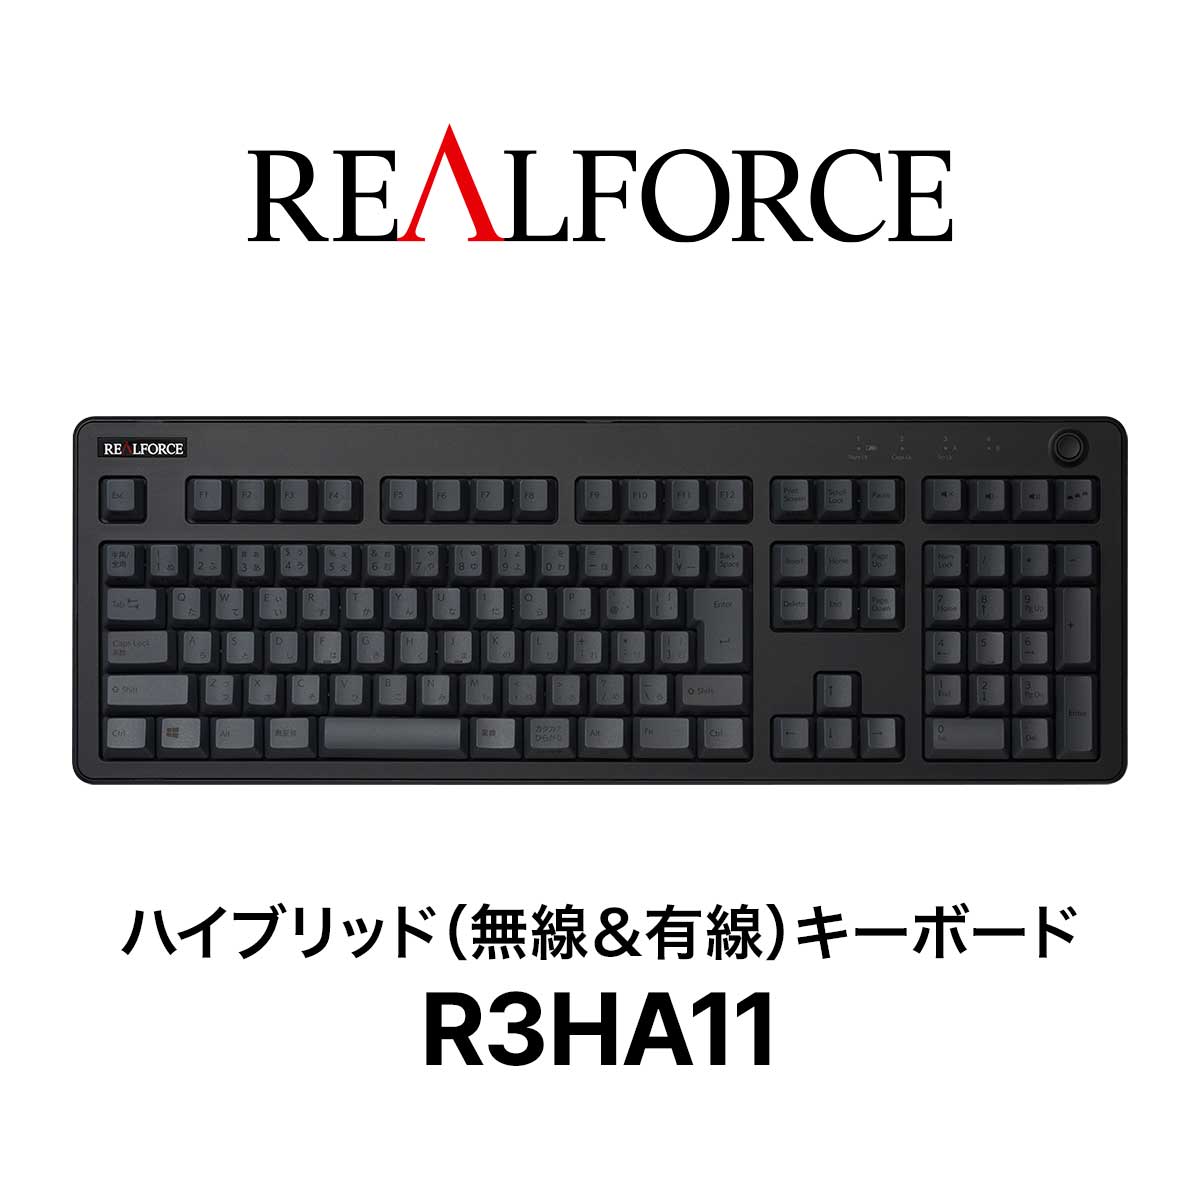 REALFORCE / R3 / キーボード / R3HA11 / ワイヤレス / Bluetooth / USB / 東プレ / ハイブリッドモデル / フルキーボード / 静音 / ブラックダークグレー / 日本語配列